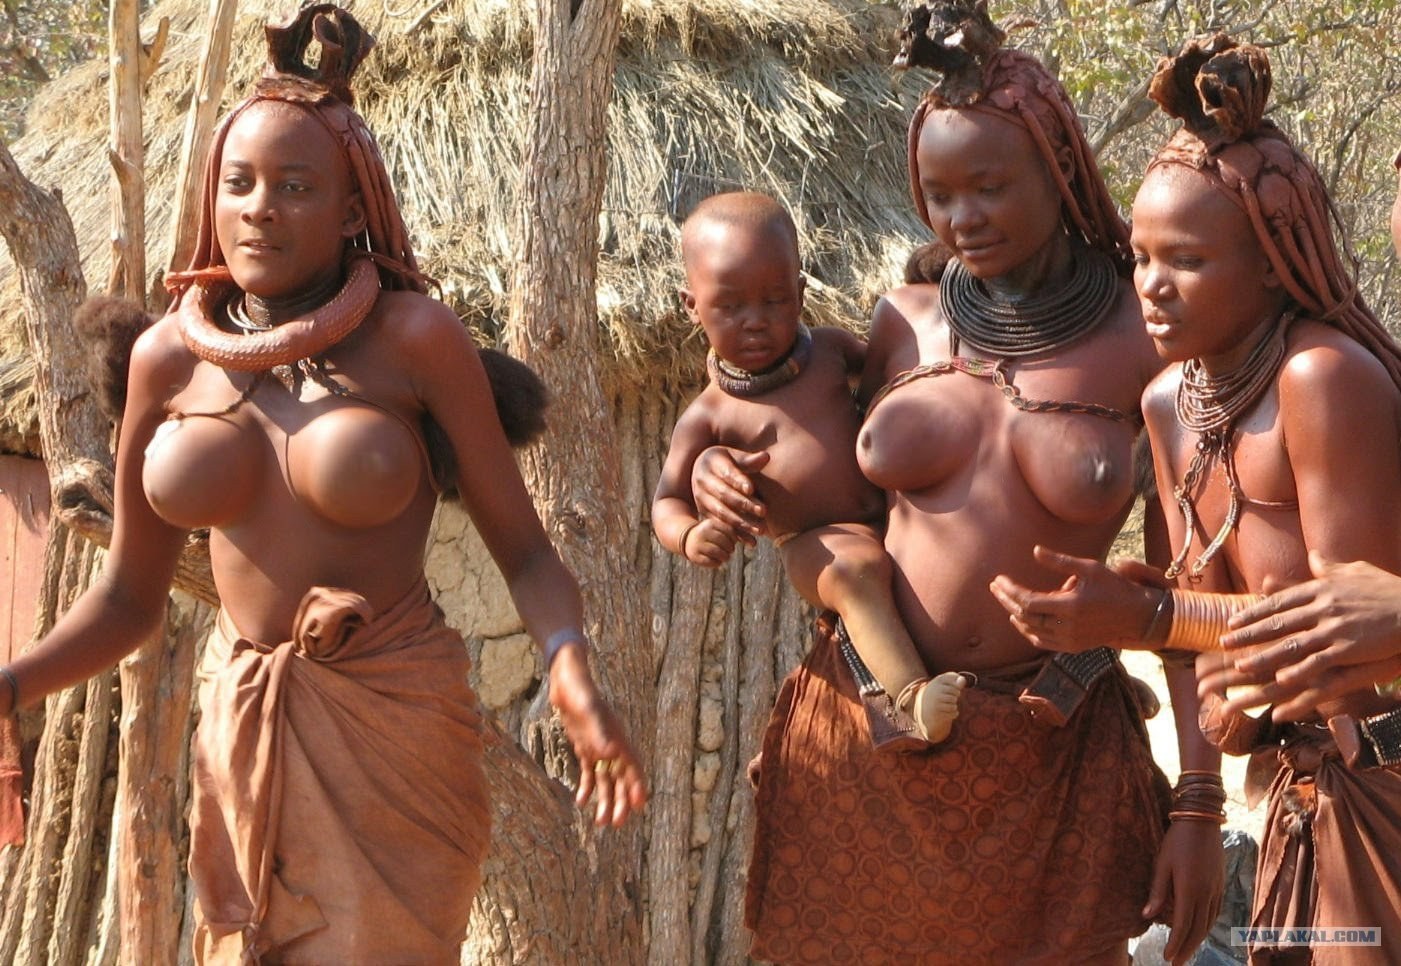 Africa native porn